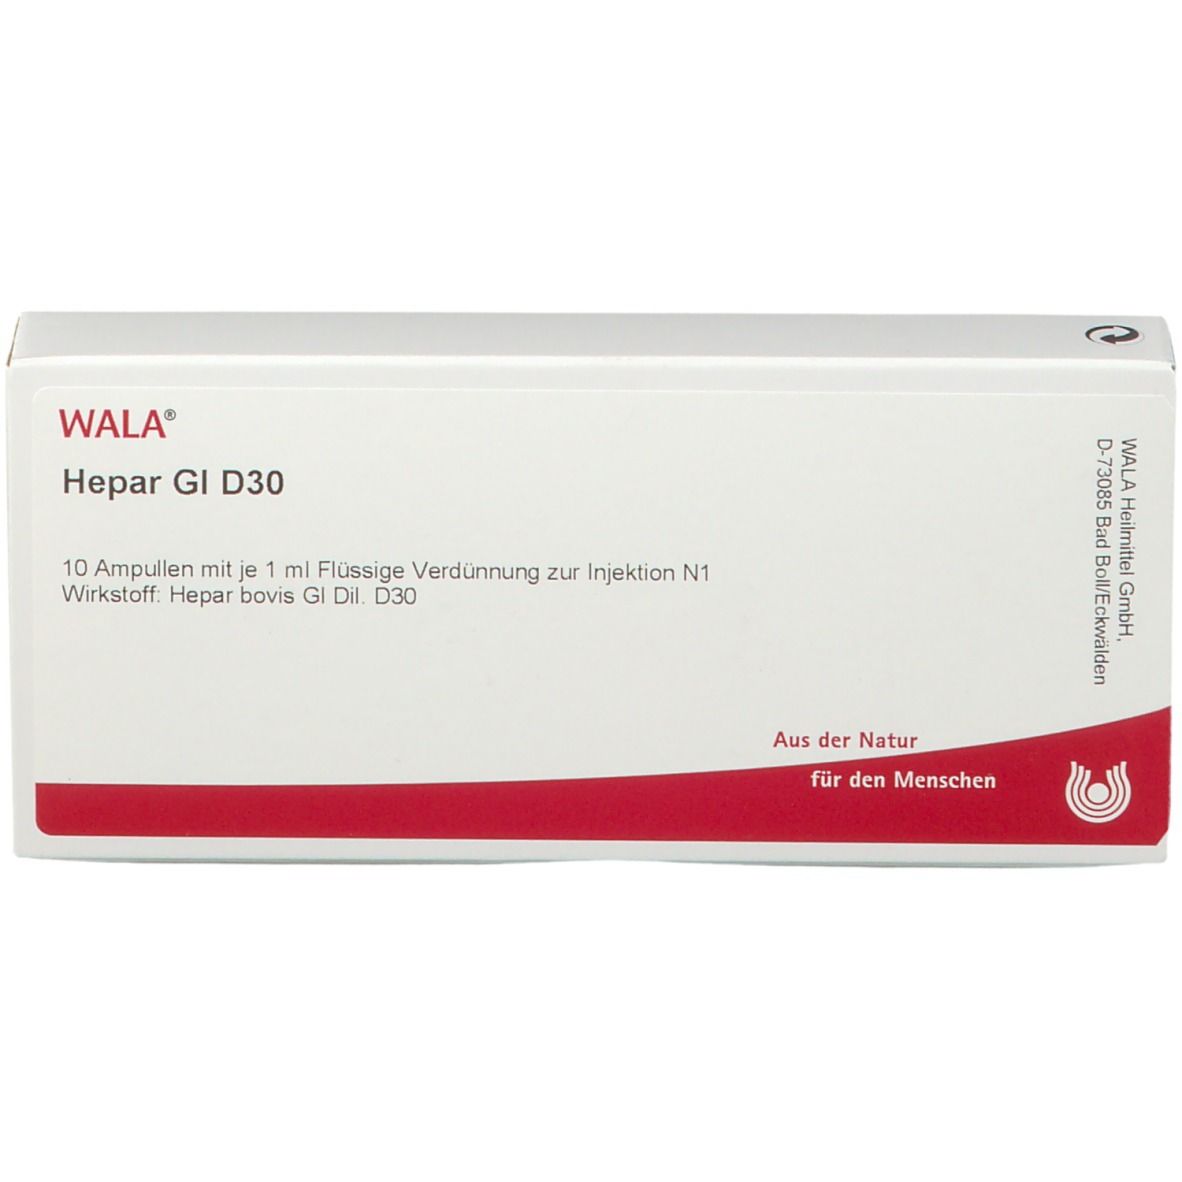 WALA® Hepar Gl D 30 Ampullen